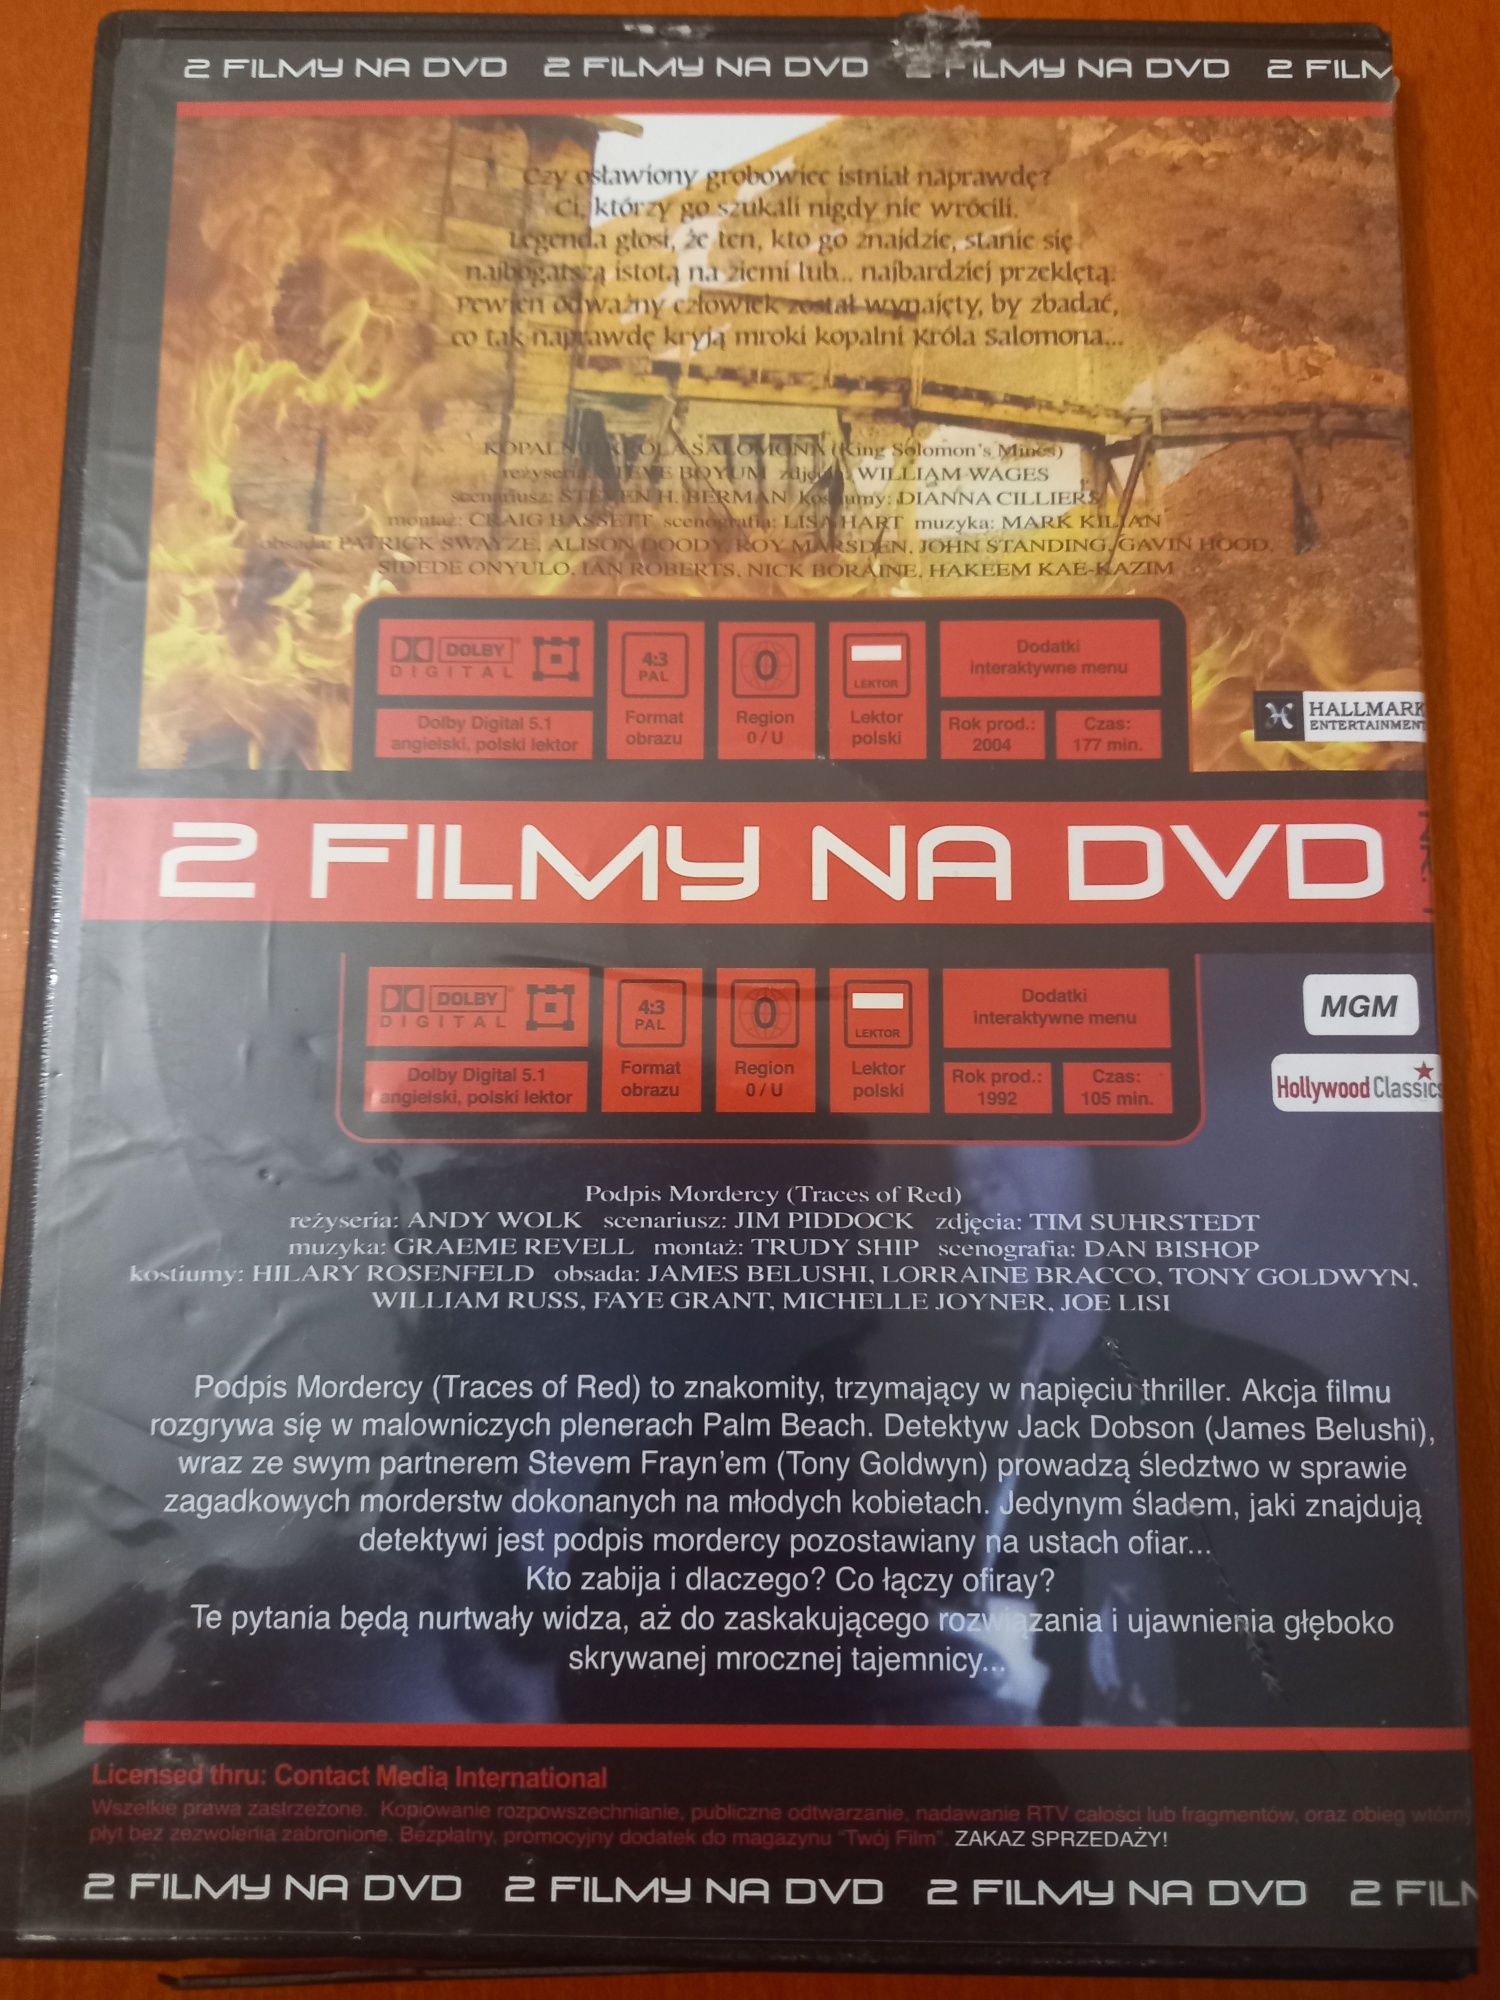 Filmy Kopalnie Króla Salomona Podpis Mordercy DVD Video